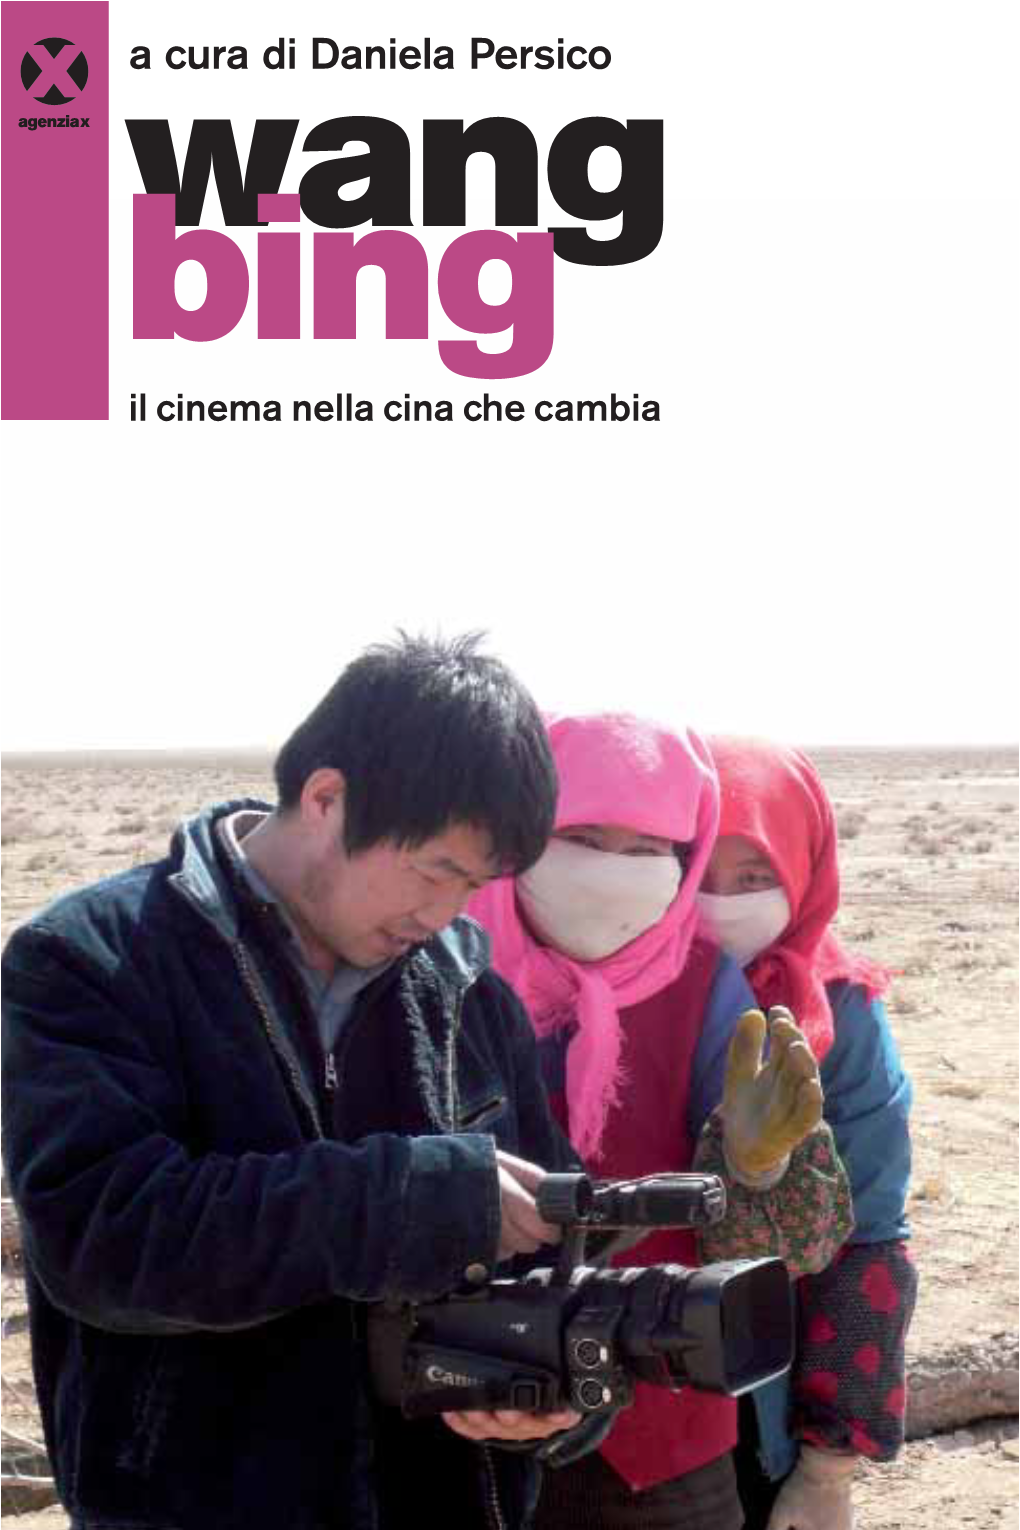 Wang Bing Il Cinema Nella Cina Che Cambia Agenziax 2010, Agenzia X